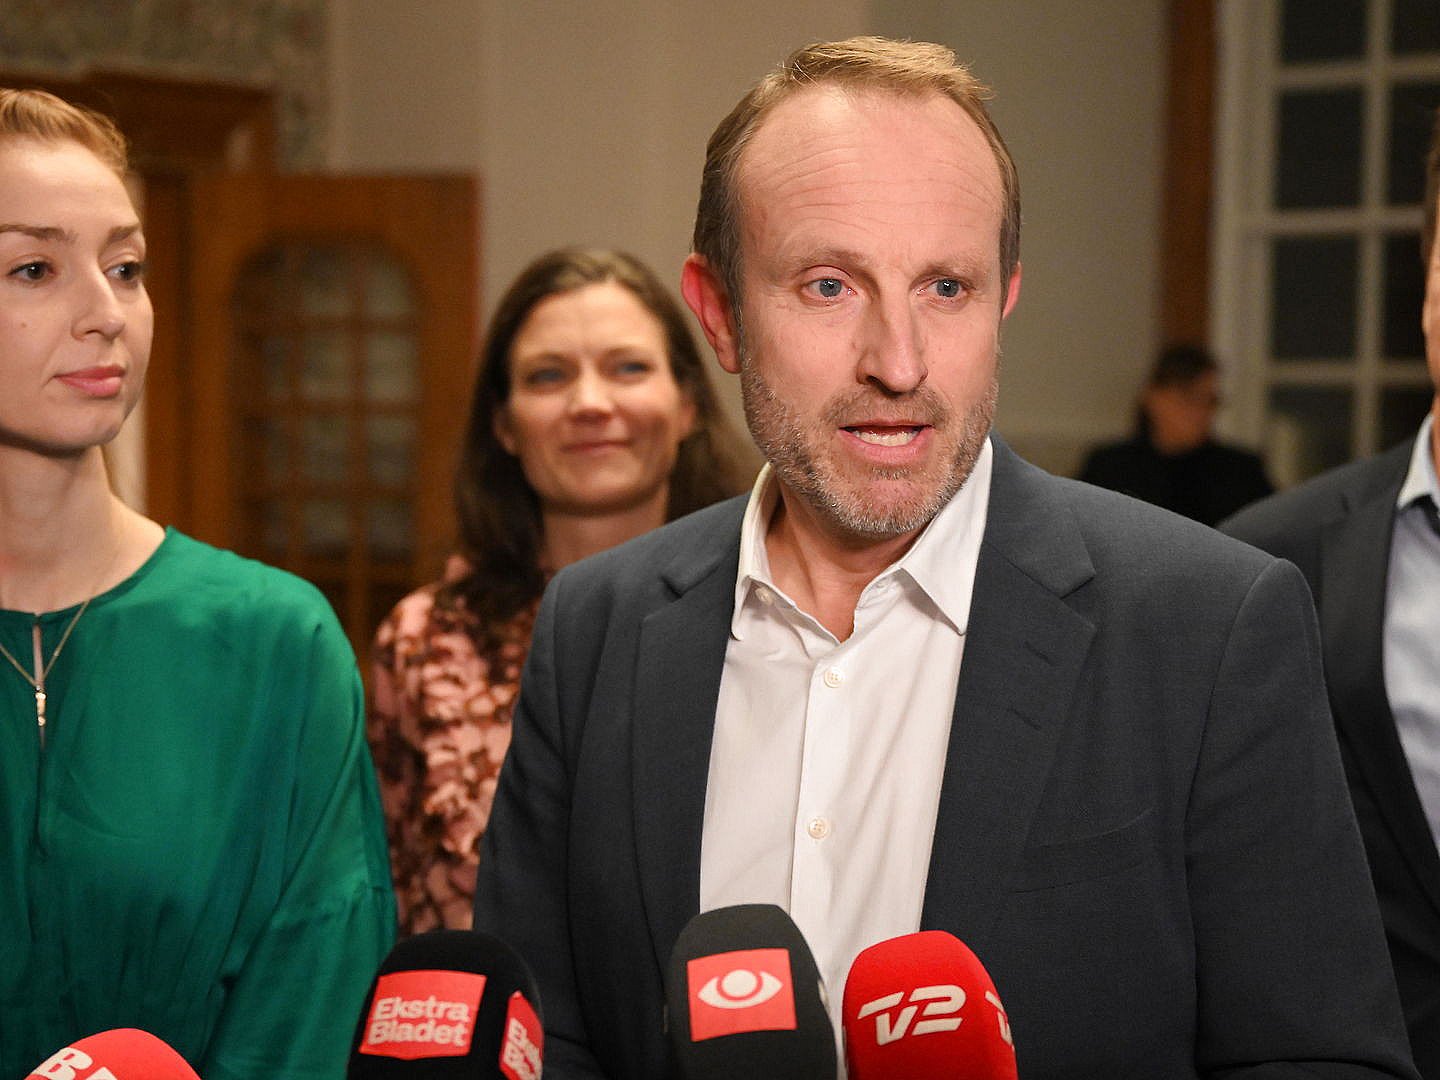 politisk leder af Radikale Venstre: "Jeg har en anden stil" | 2